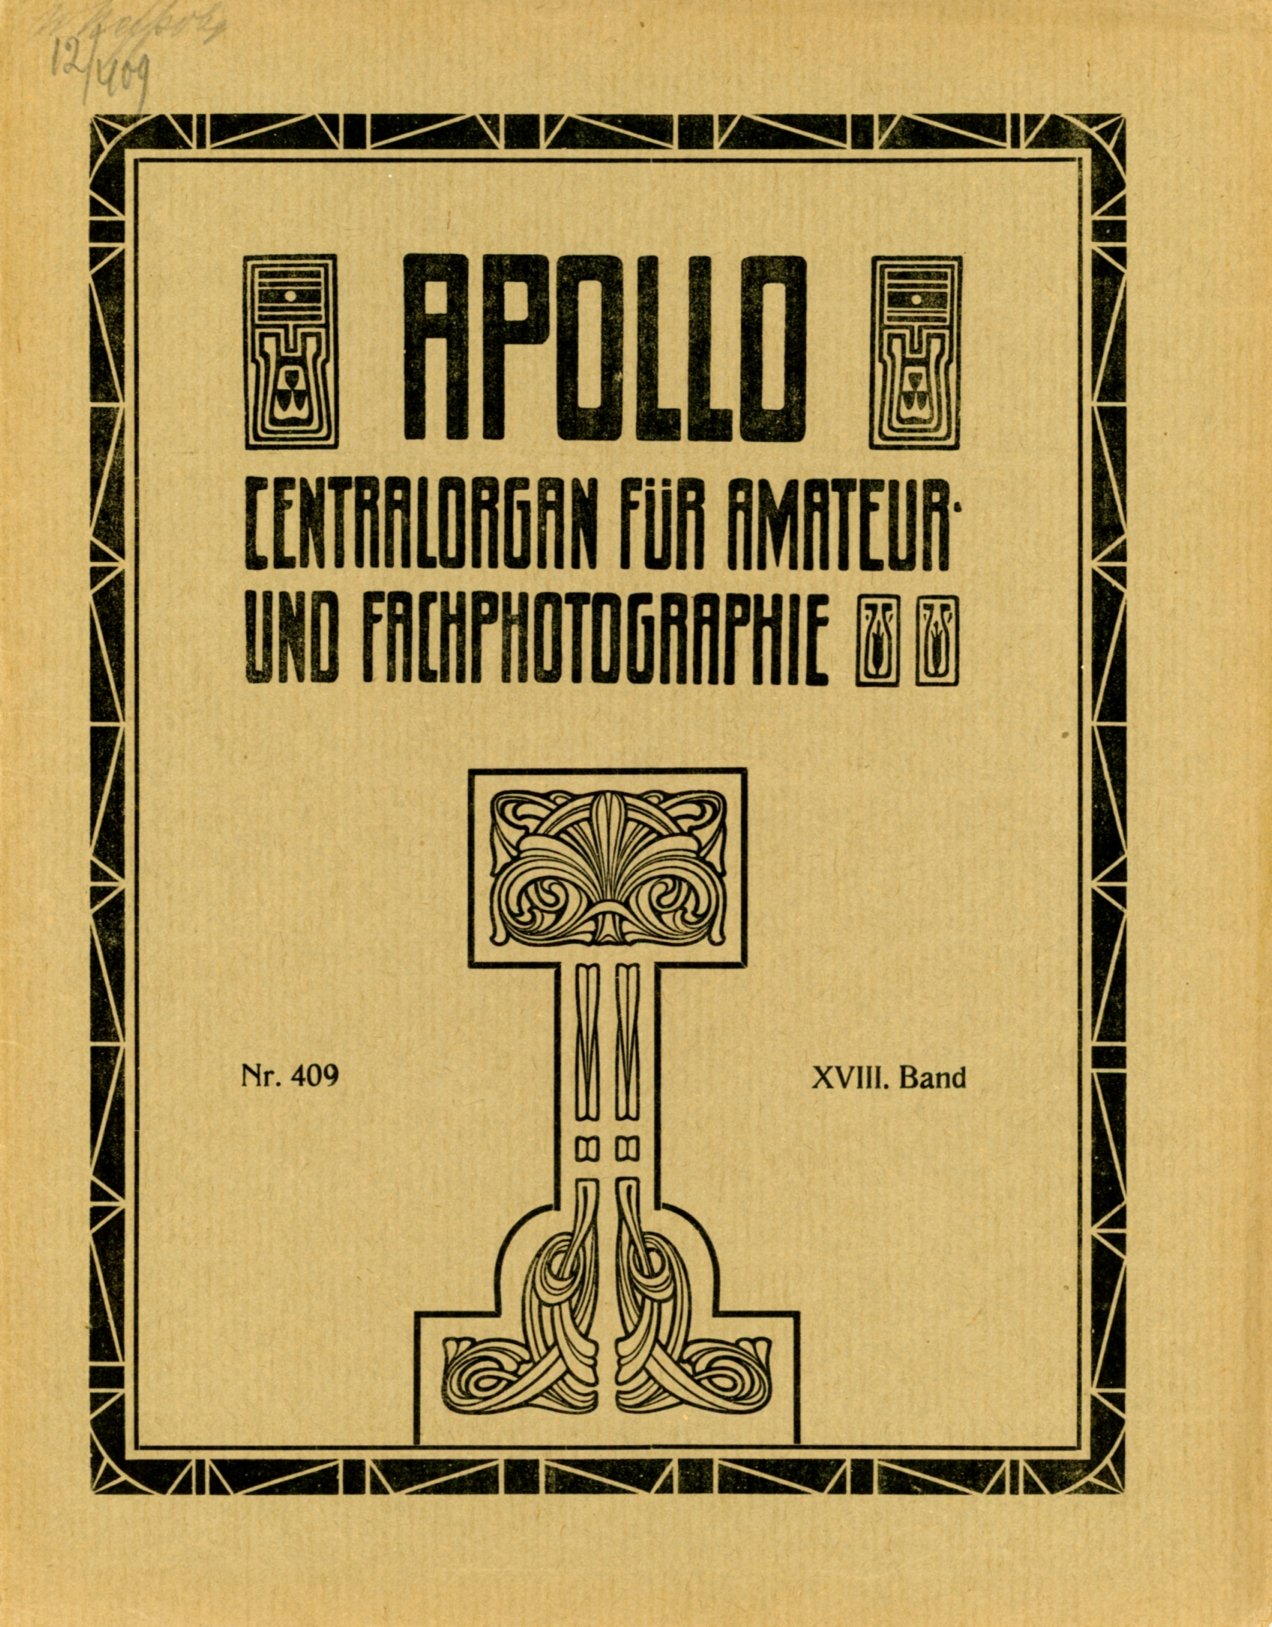 Журнал Apollo № 409, 8 juli 1912 (Музей фотографії Київського національного університету технології та дизайну CC BY-NC-SA)